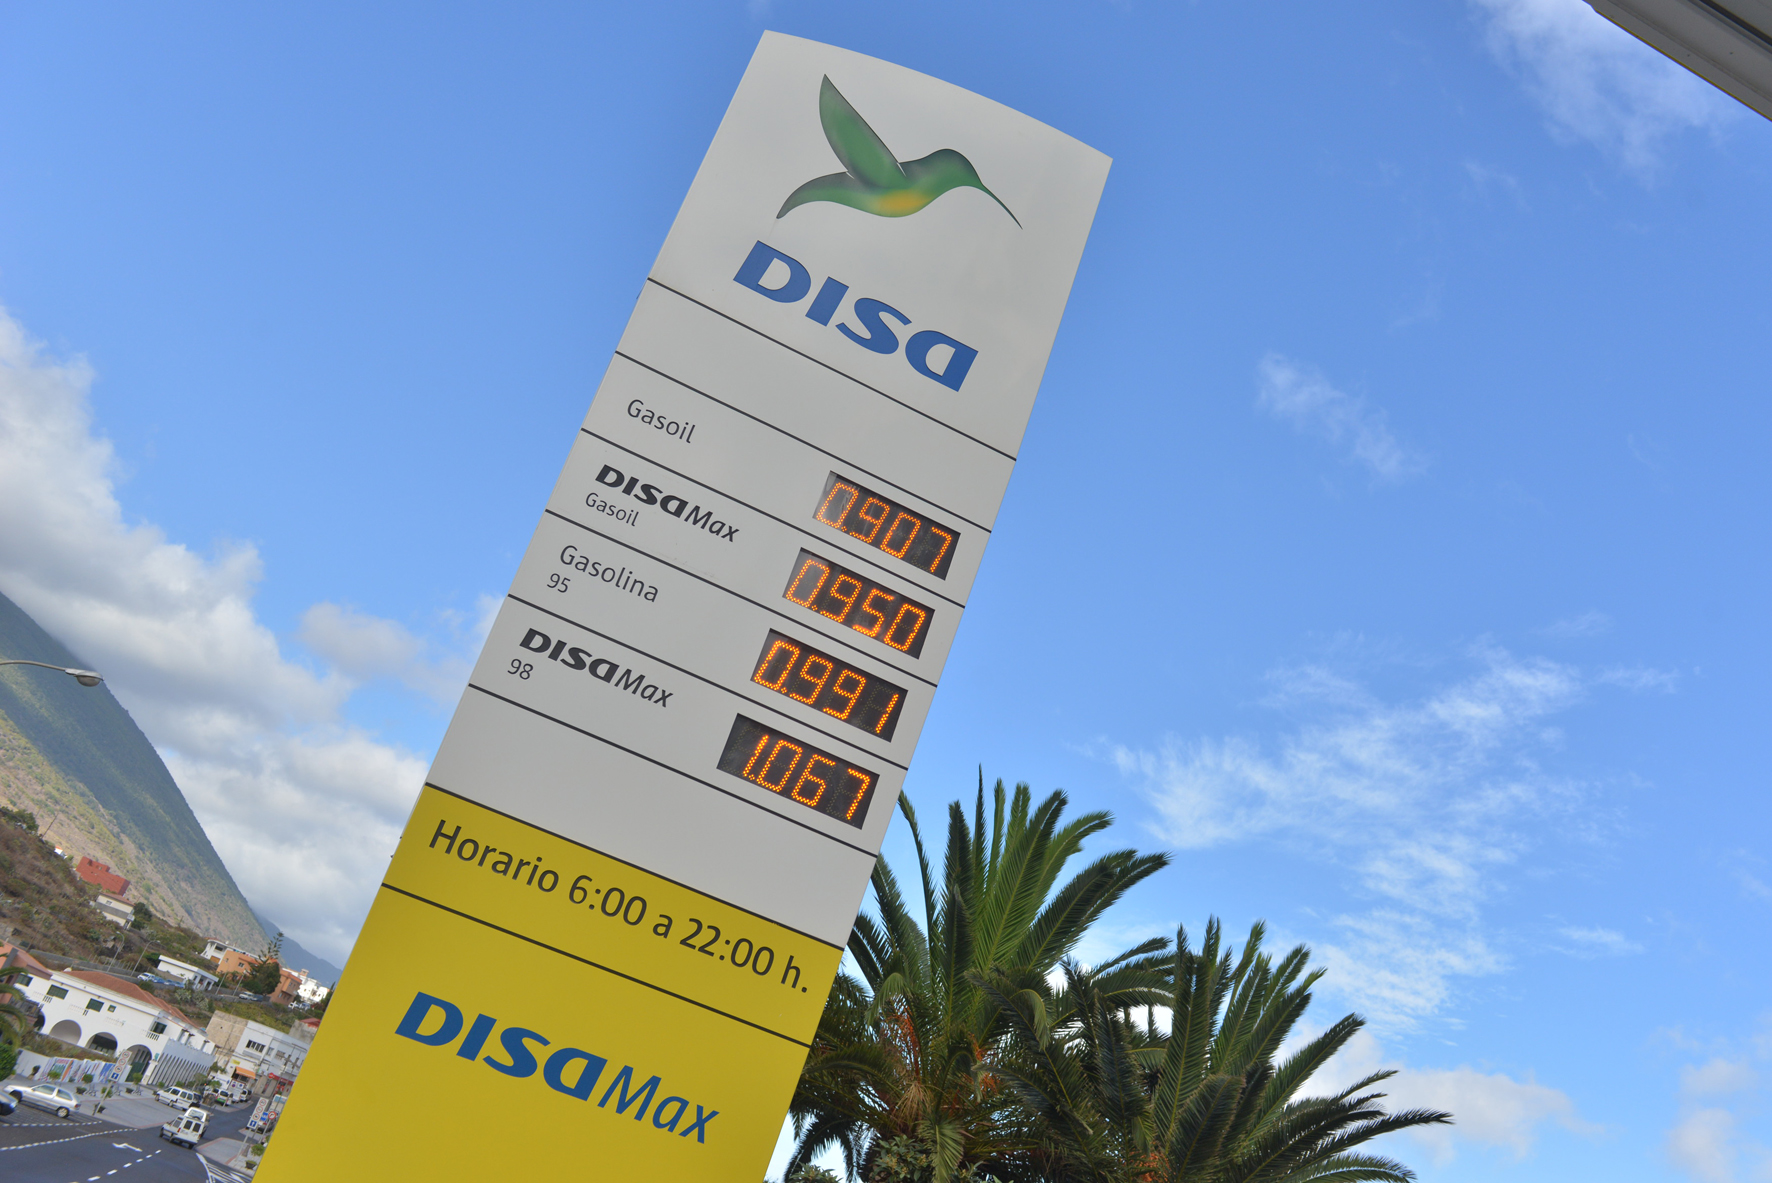 La bajada de precio de los combustibles acordada entre DISA, Gobierno de Canarias y los Cabildos de El Hierro y La Gomera entra en vigor mañana